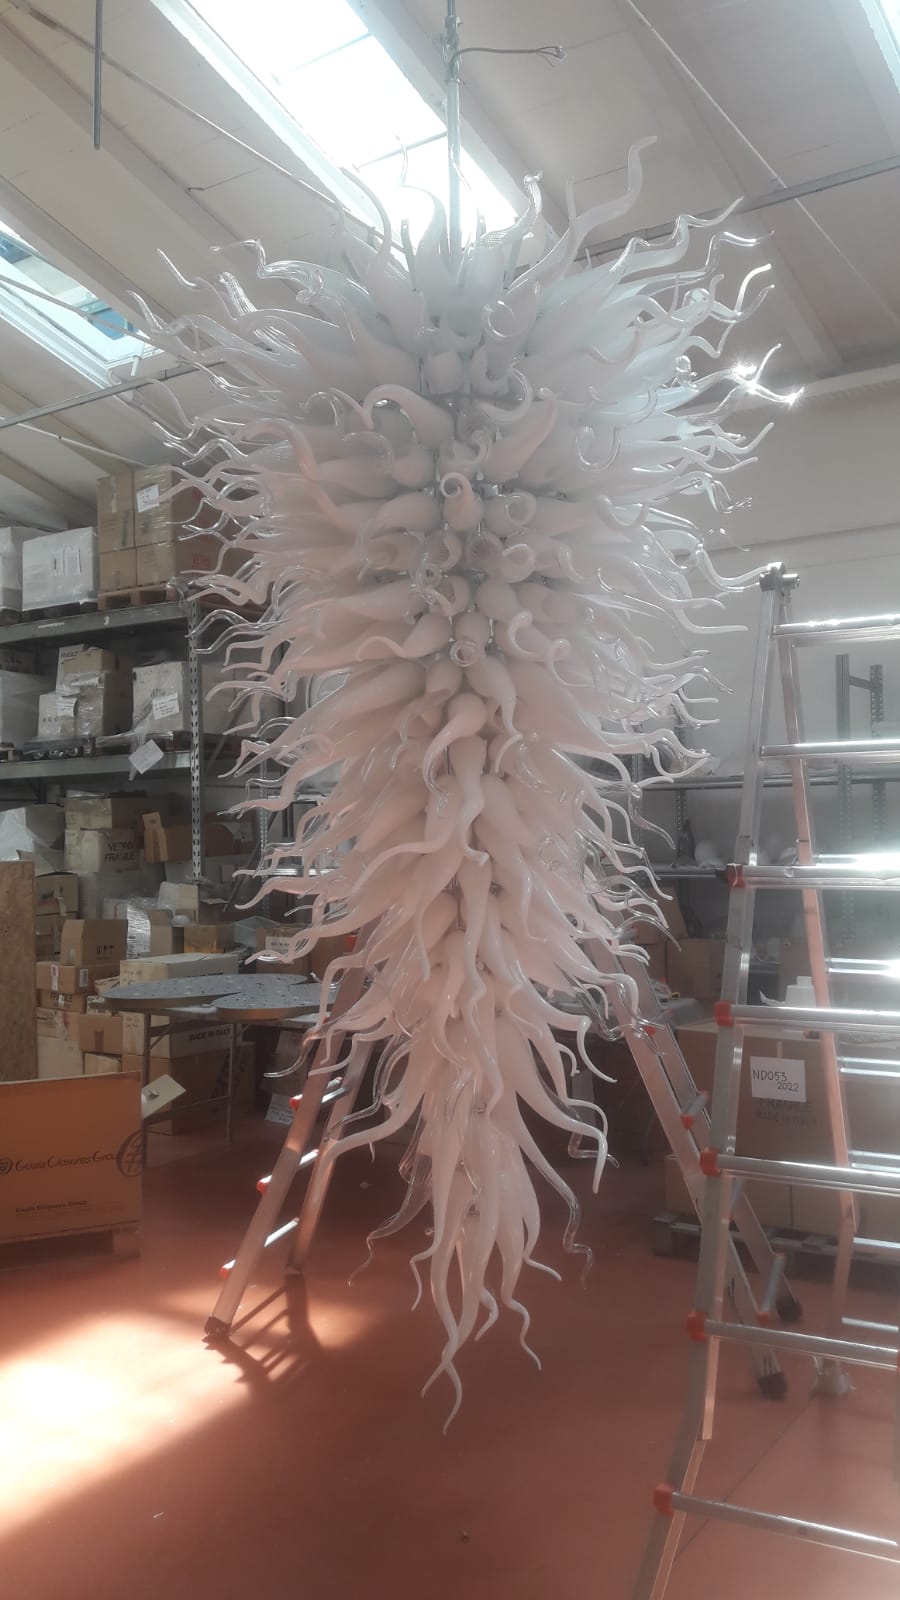 Large White Horn Murano Art Glass Chandelier - 3 Meters Long